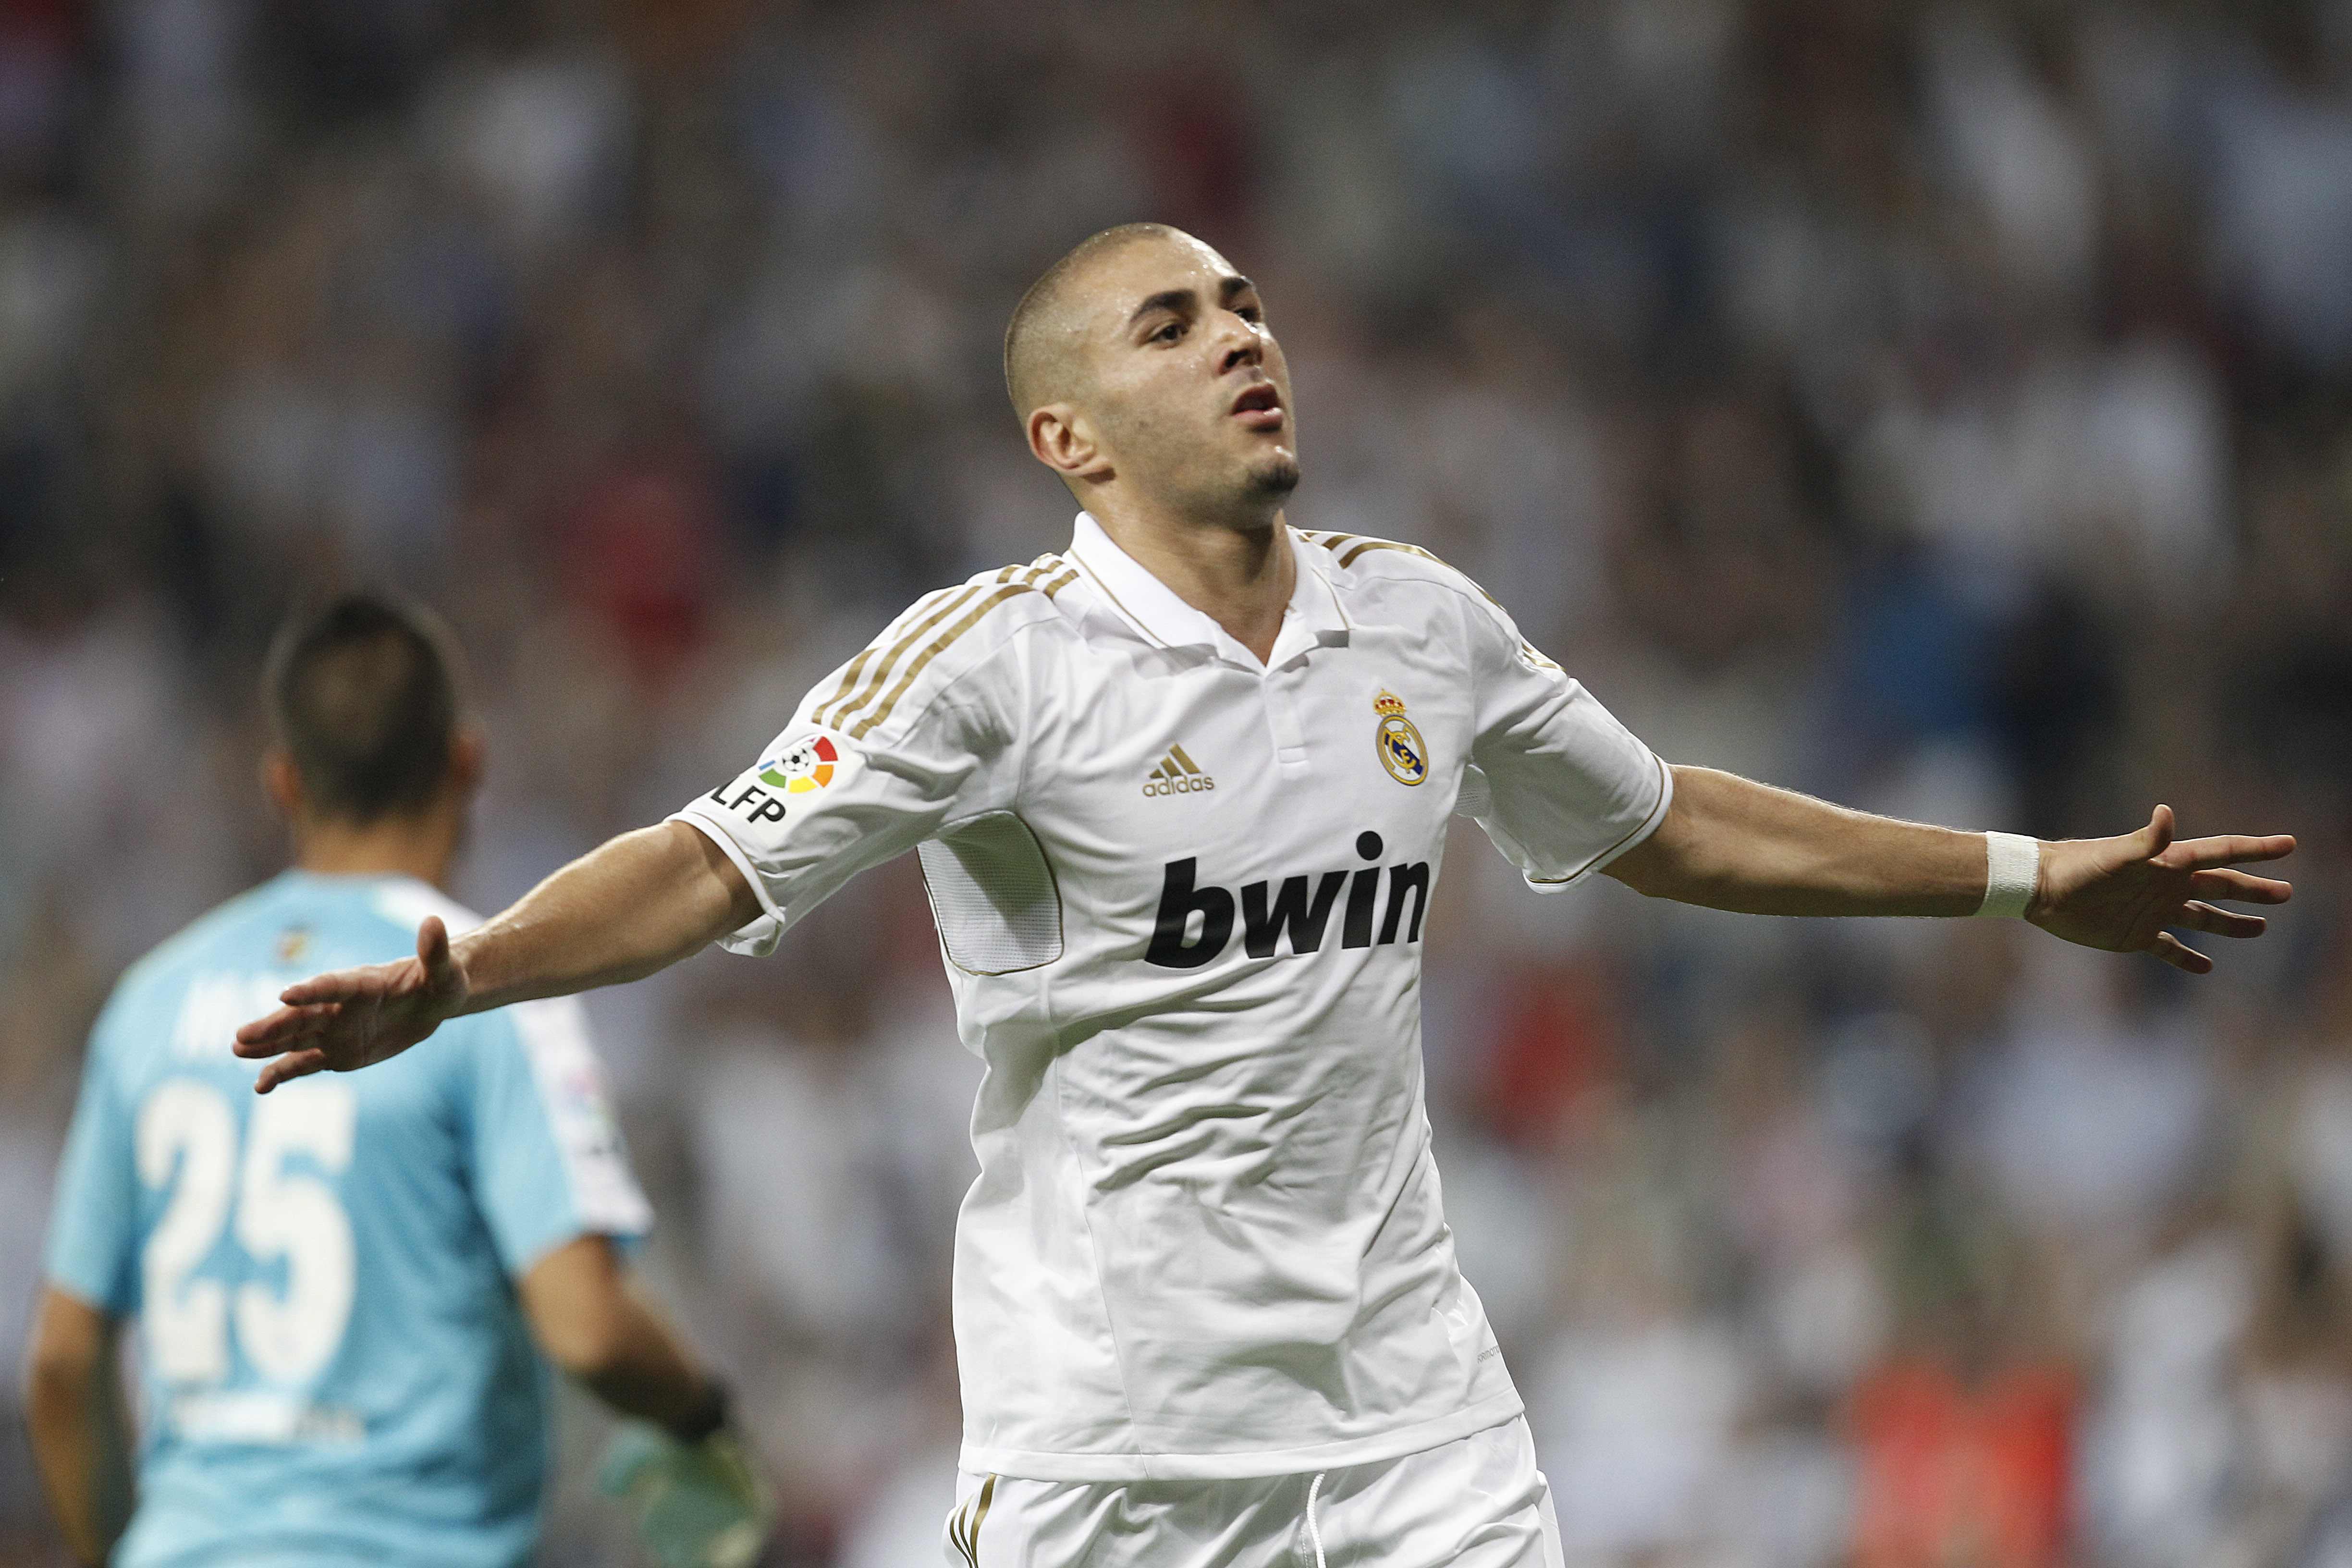 På topp kommer Karim Benzema (Real Madrid) dra ett tungt lass. Han ackompanjeras av: 